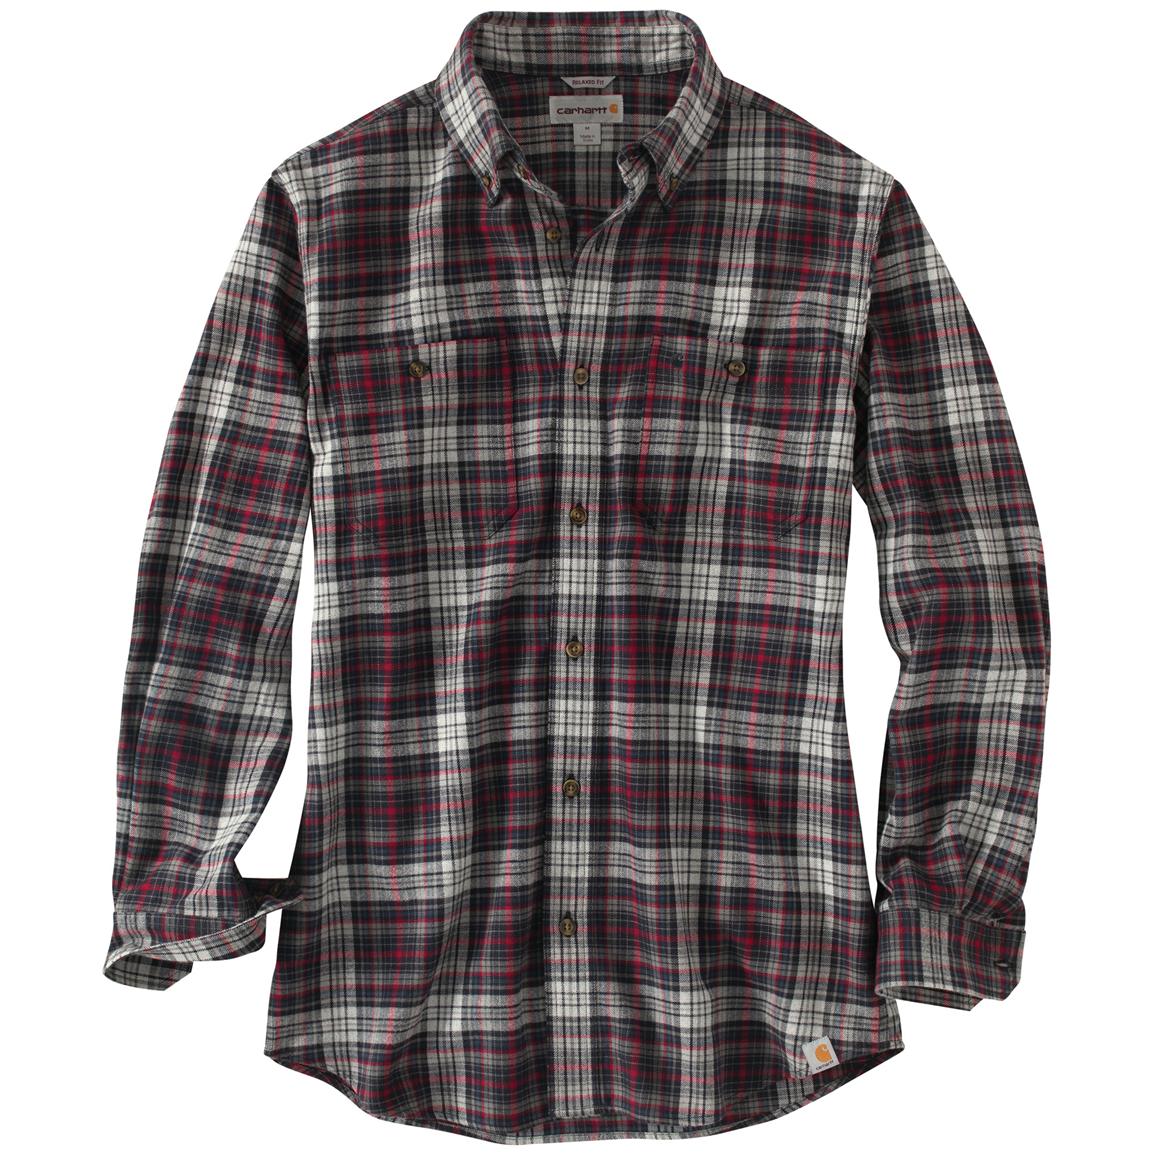 Carhartt Trumbull Long-sleeved Plaid Shirt - 594024, Shirts at ...